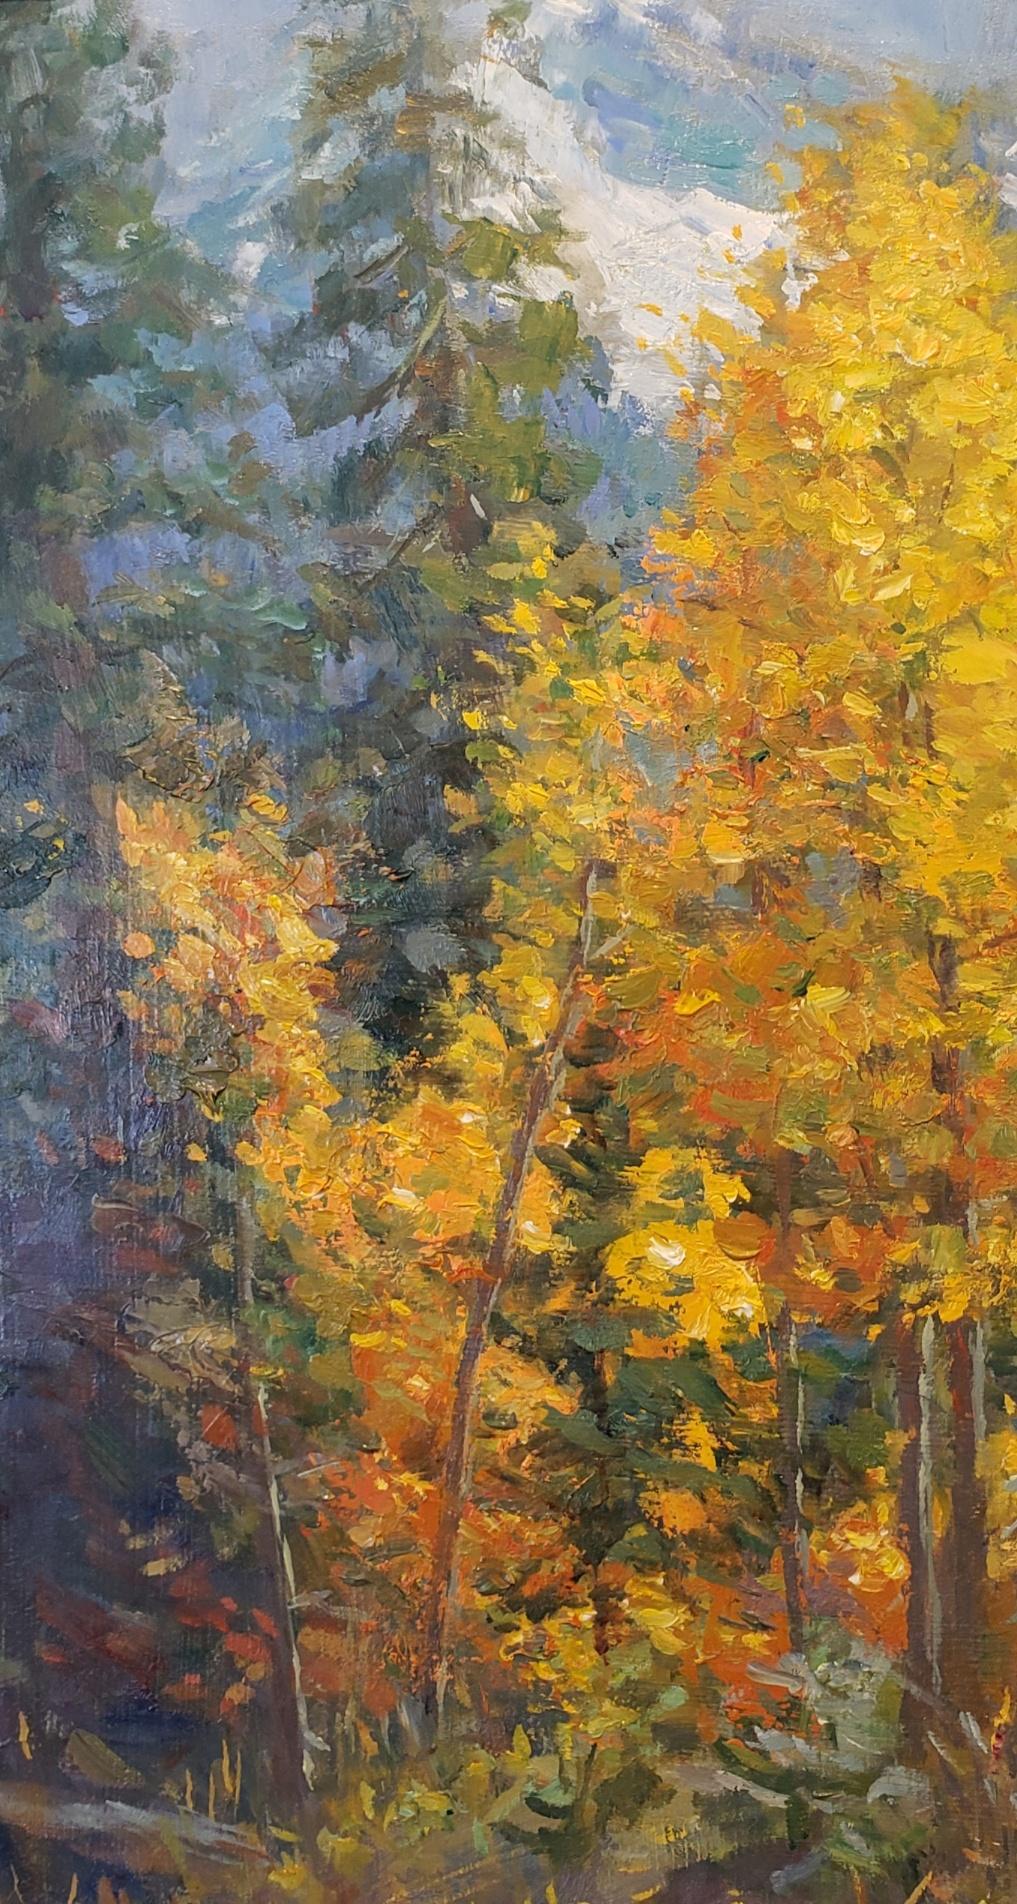 Aspens wurde 2020 vor Ort in den Rocky Mountains von Colorado gemalt. Aspens zeigt den Wechsel der Jahreszeiten mit den leuchtend gelben Blättern und dem Schnee in den Rocky Mountains.
Kalwicks Gemälde decken ein breites Spektrum an Themen ab.  Am